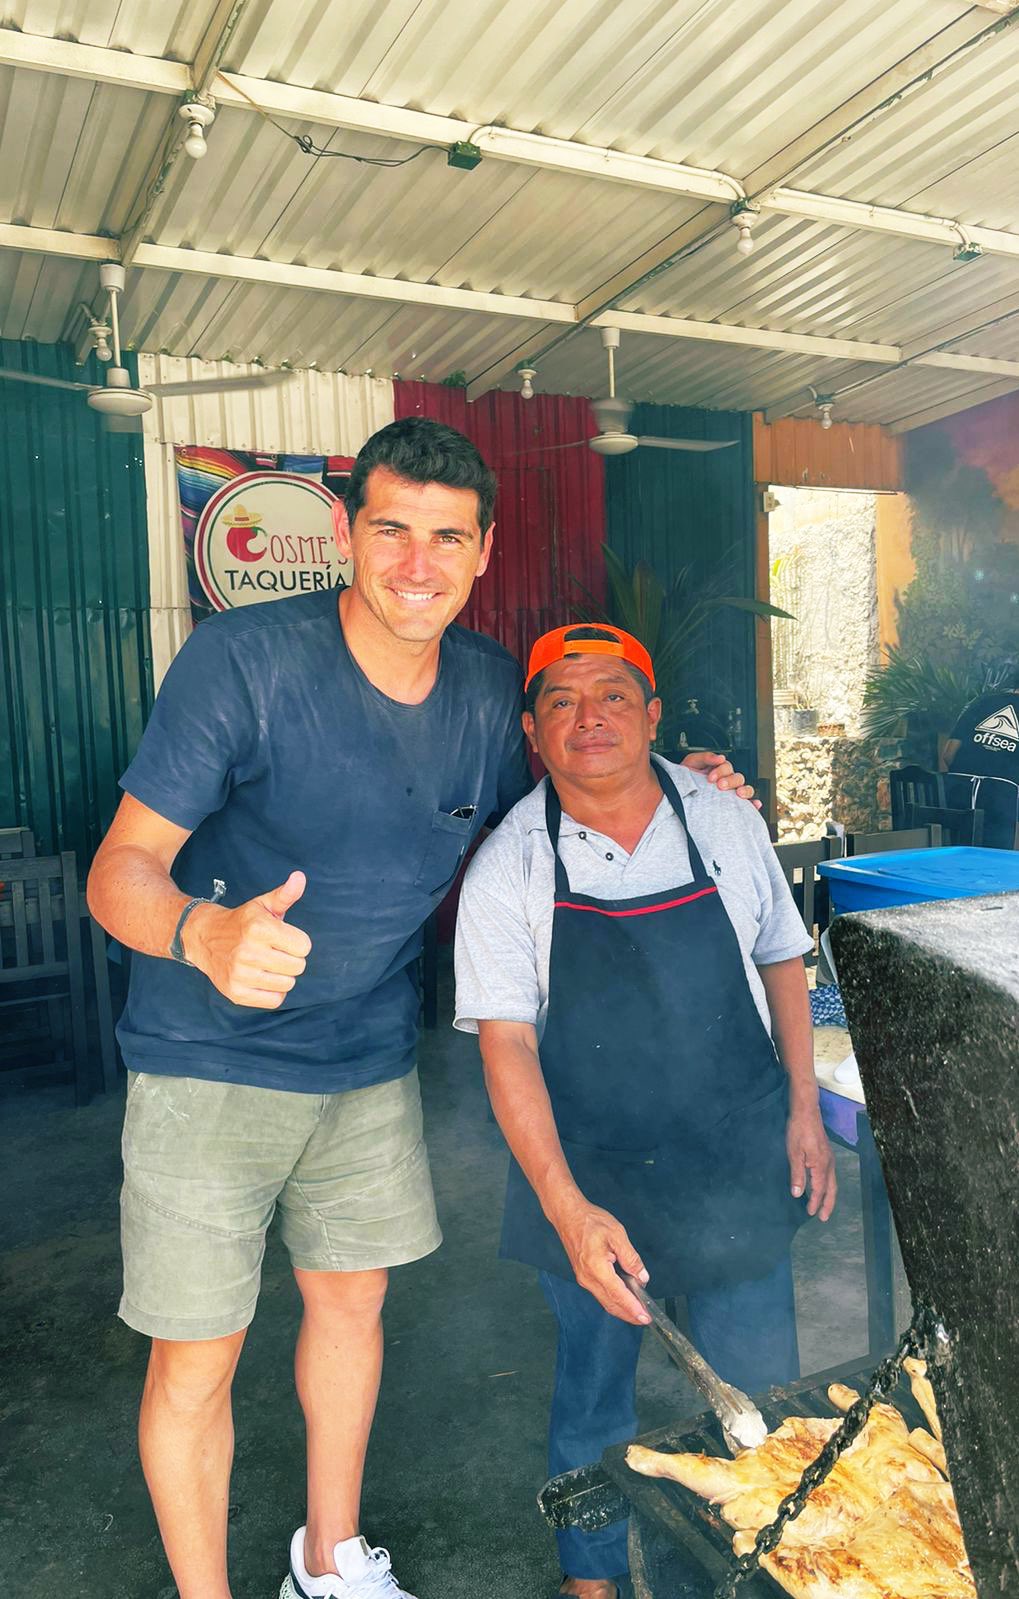 Un short y sus tenis: La curiosa propina que Iker Casillas dejó en una taquería mexicana